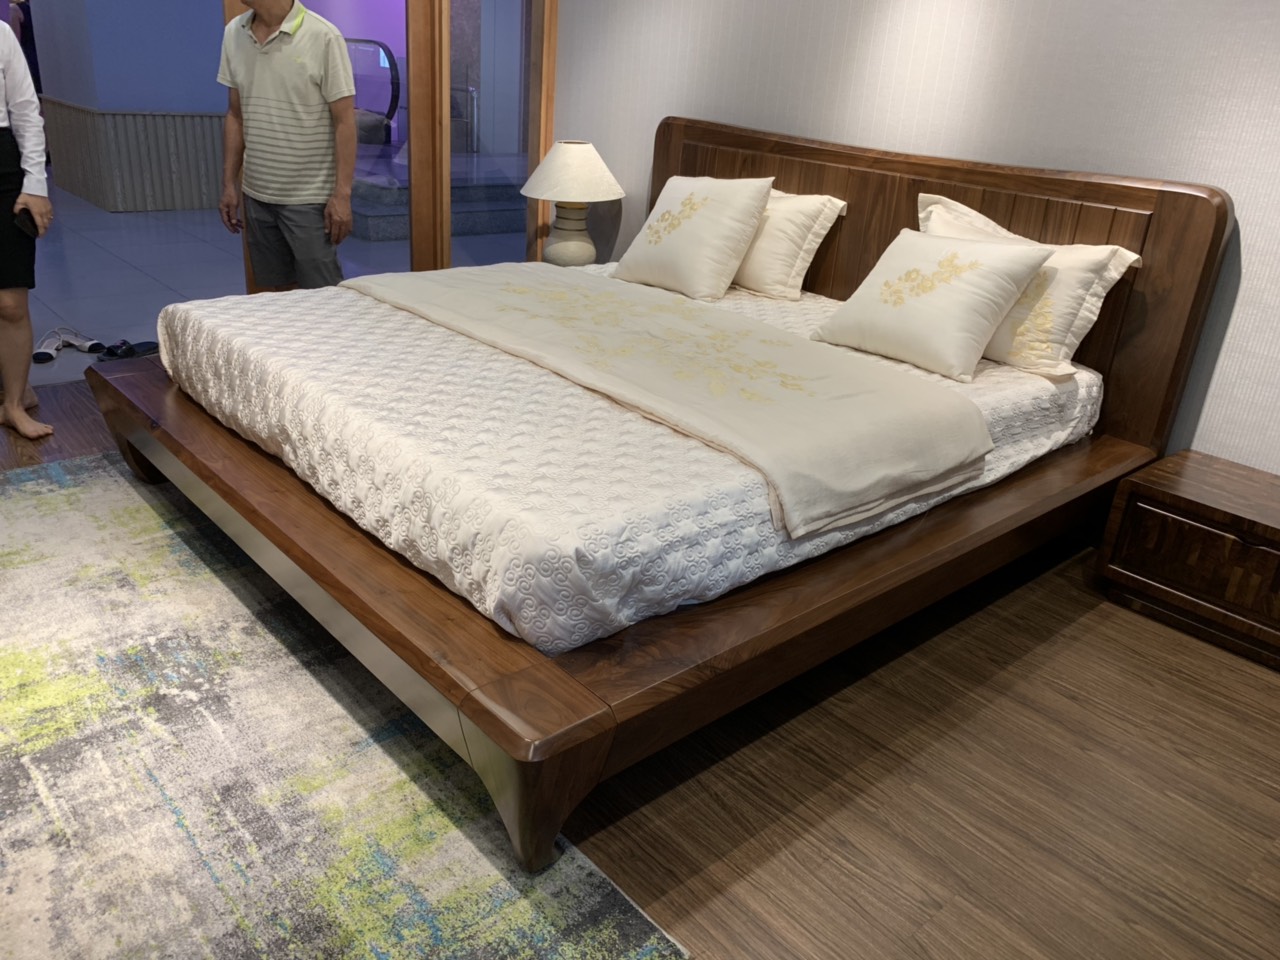 Chọn giường gỗ tự nhiên óc chó cho phòng ngủ của bạn